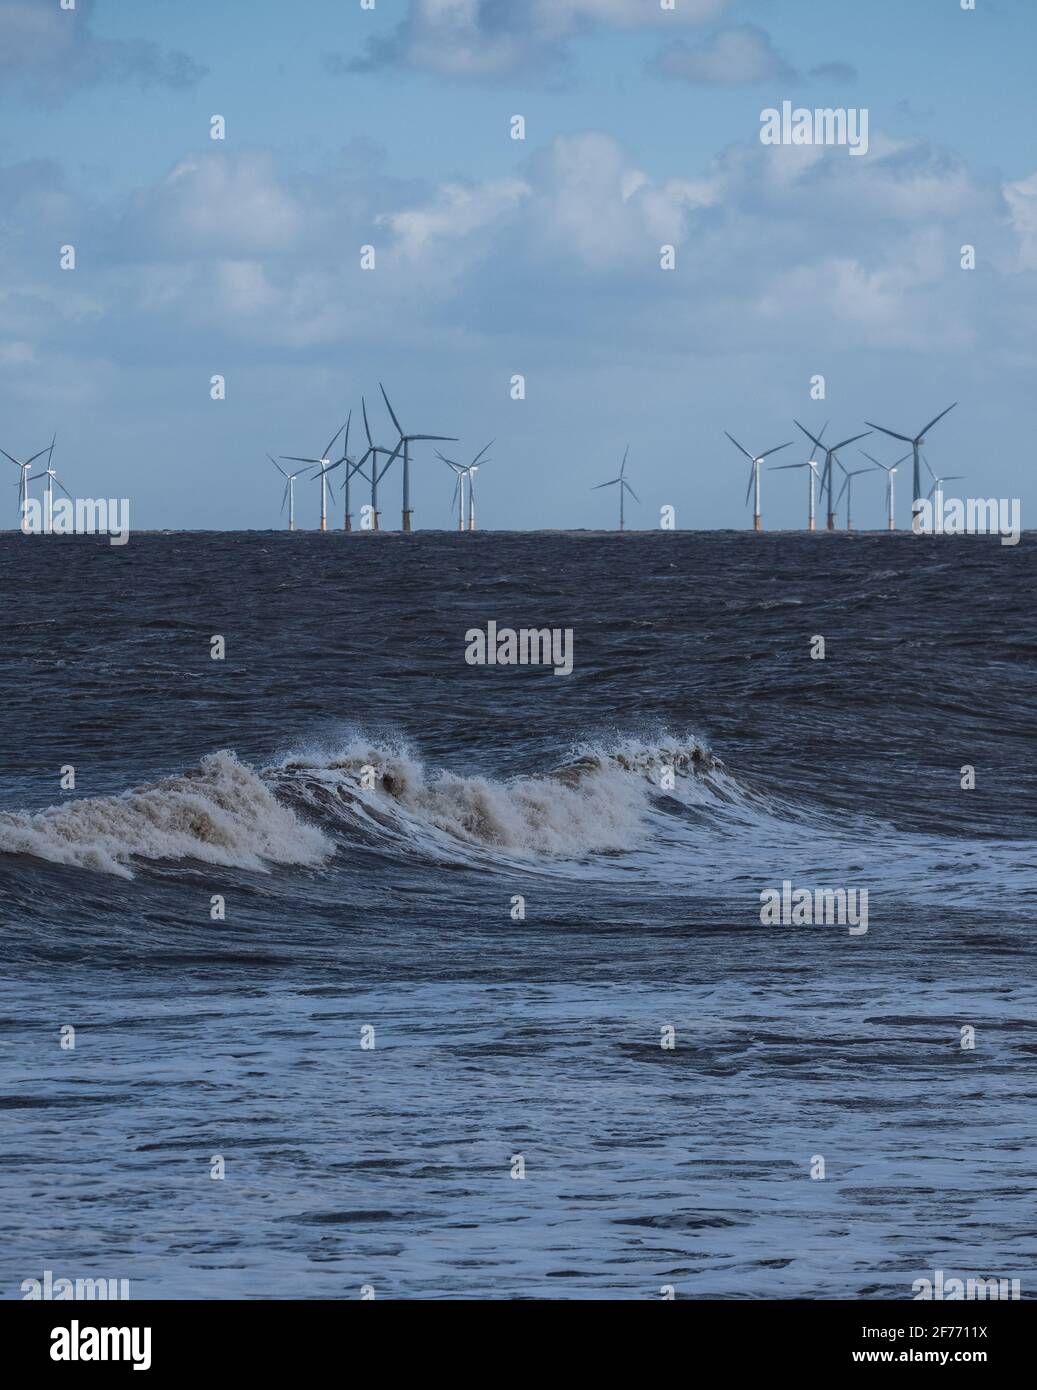 La potenza d'onda del Mare del Nord nel Lincolnshire costeggiare con turbine eoliche in lontananza consentendo la fornitura di energia rinnovabile e sostenibile Foto Stock